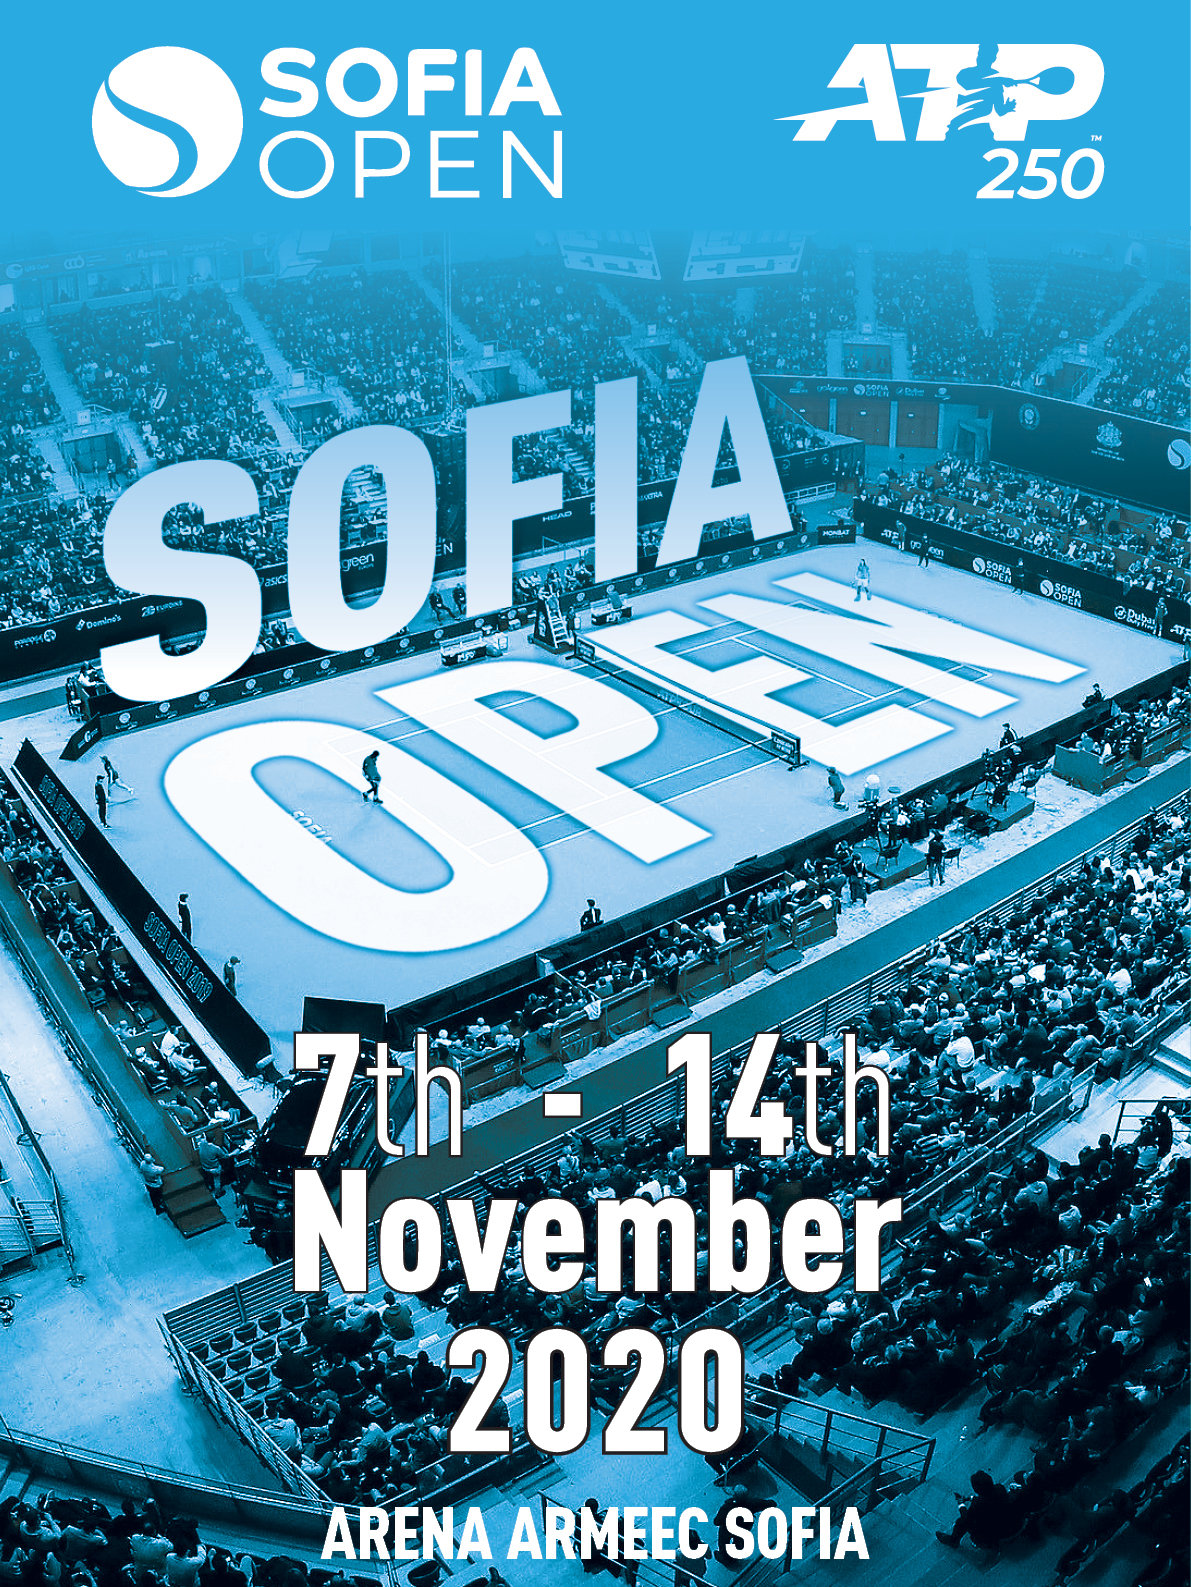 Sofia Open ще се проведе от 7-и до 14 ноември,